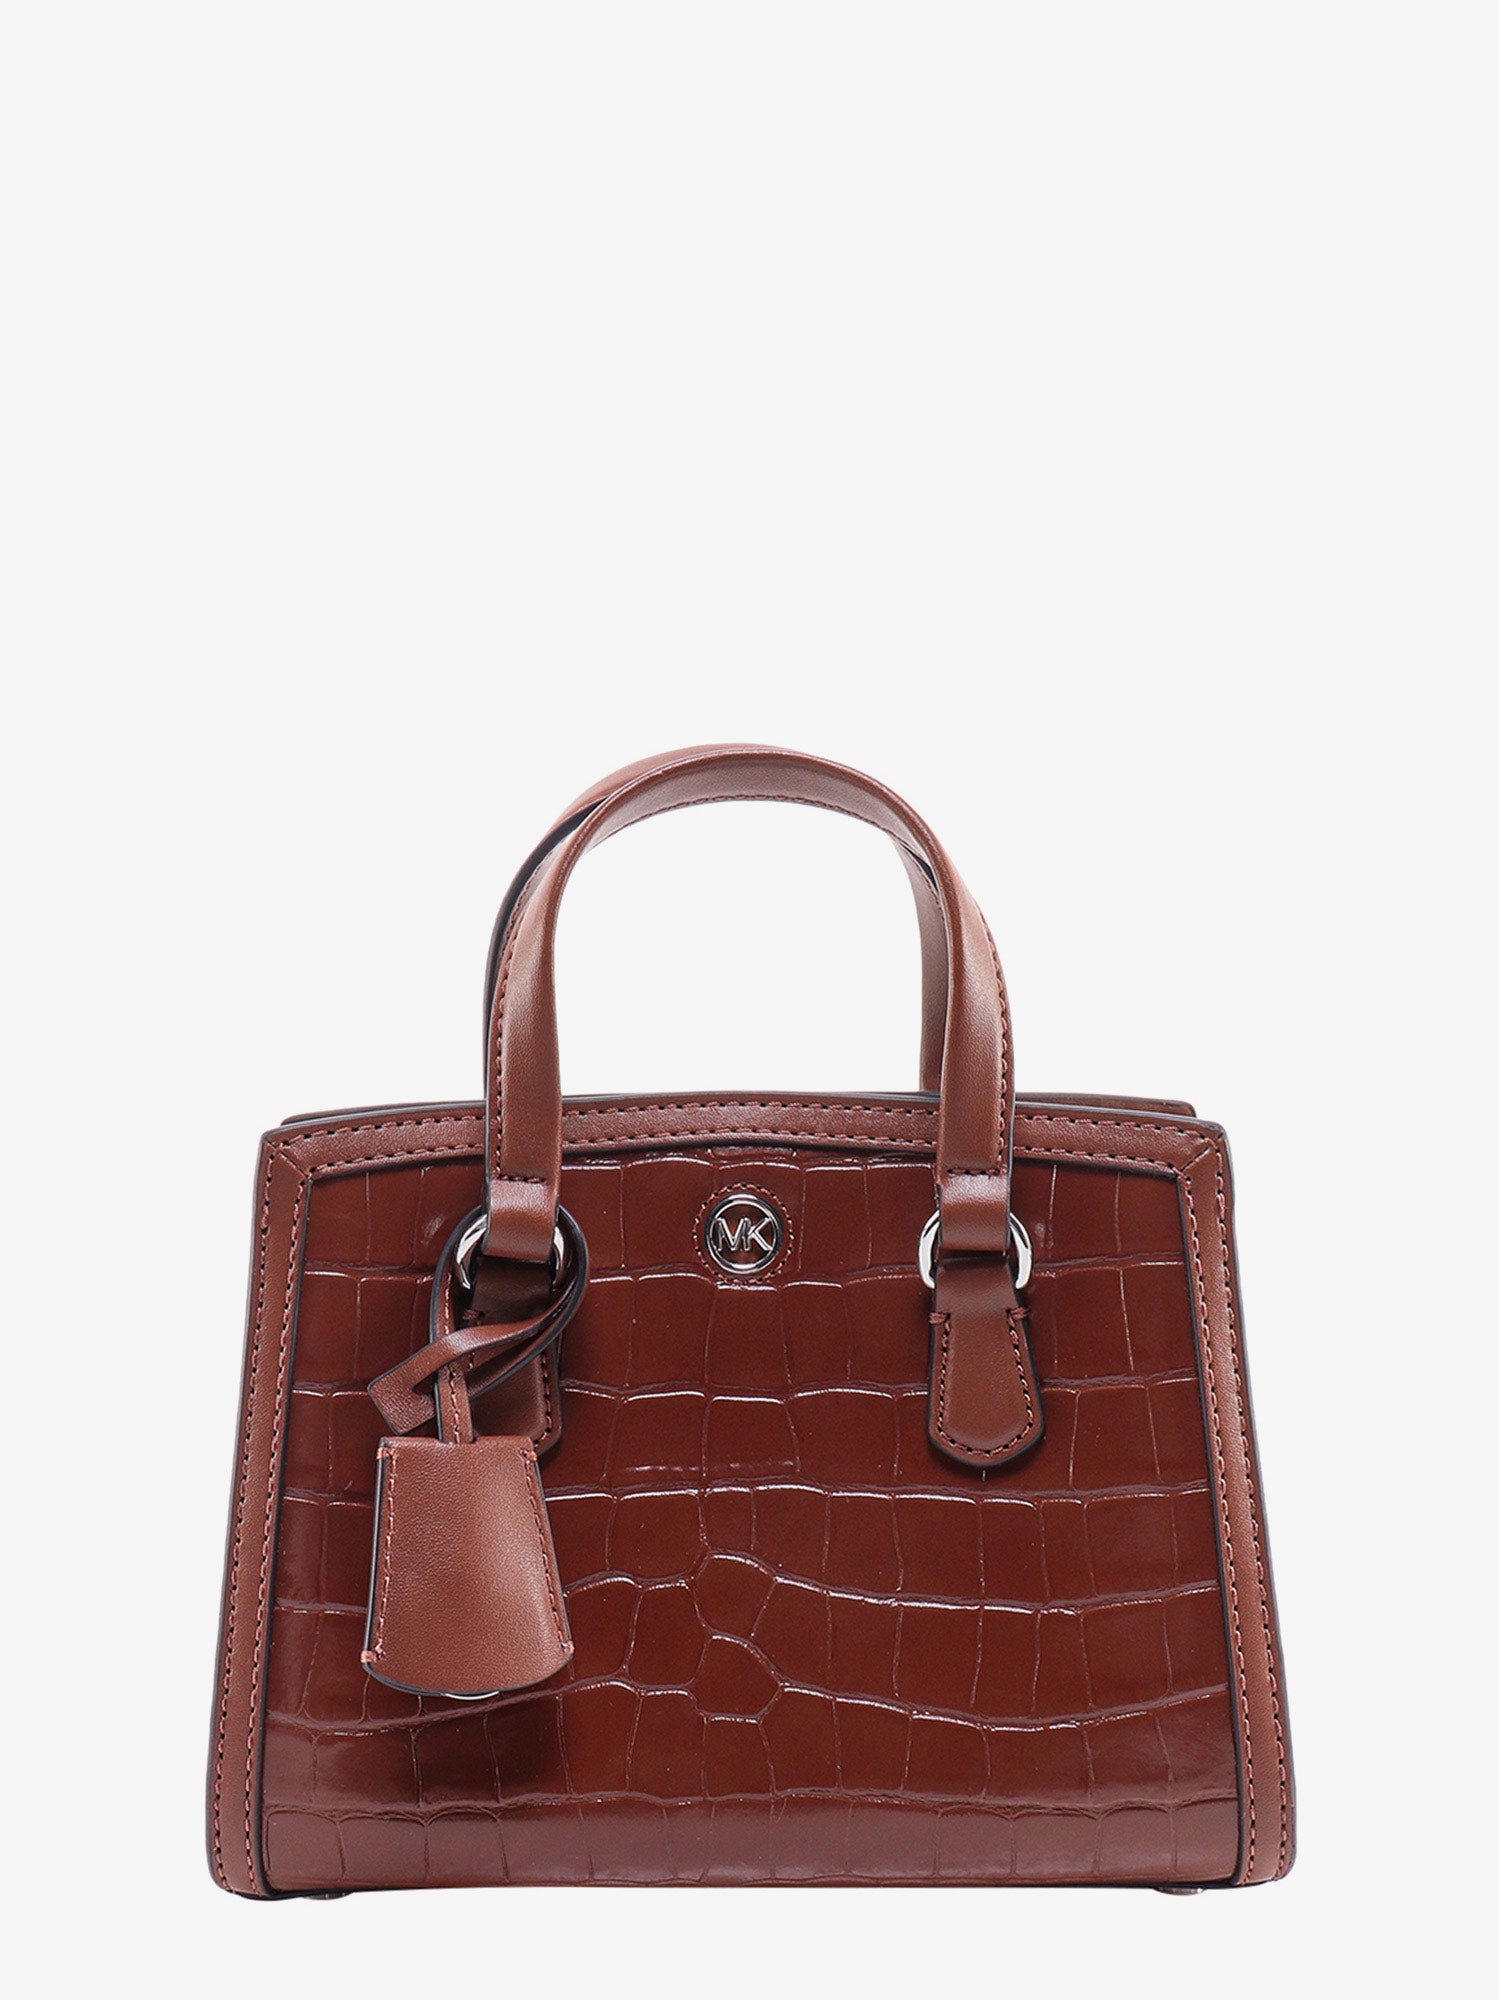 Michael Kors Handbag In Brown